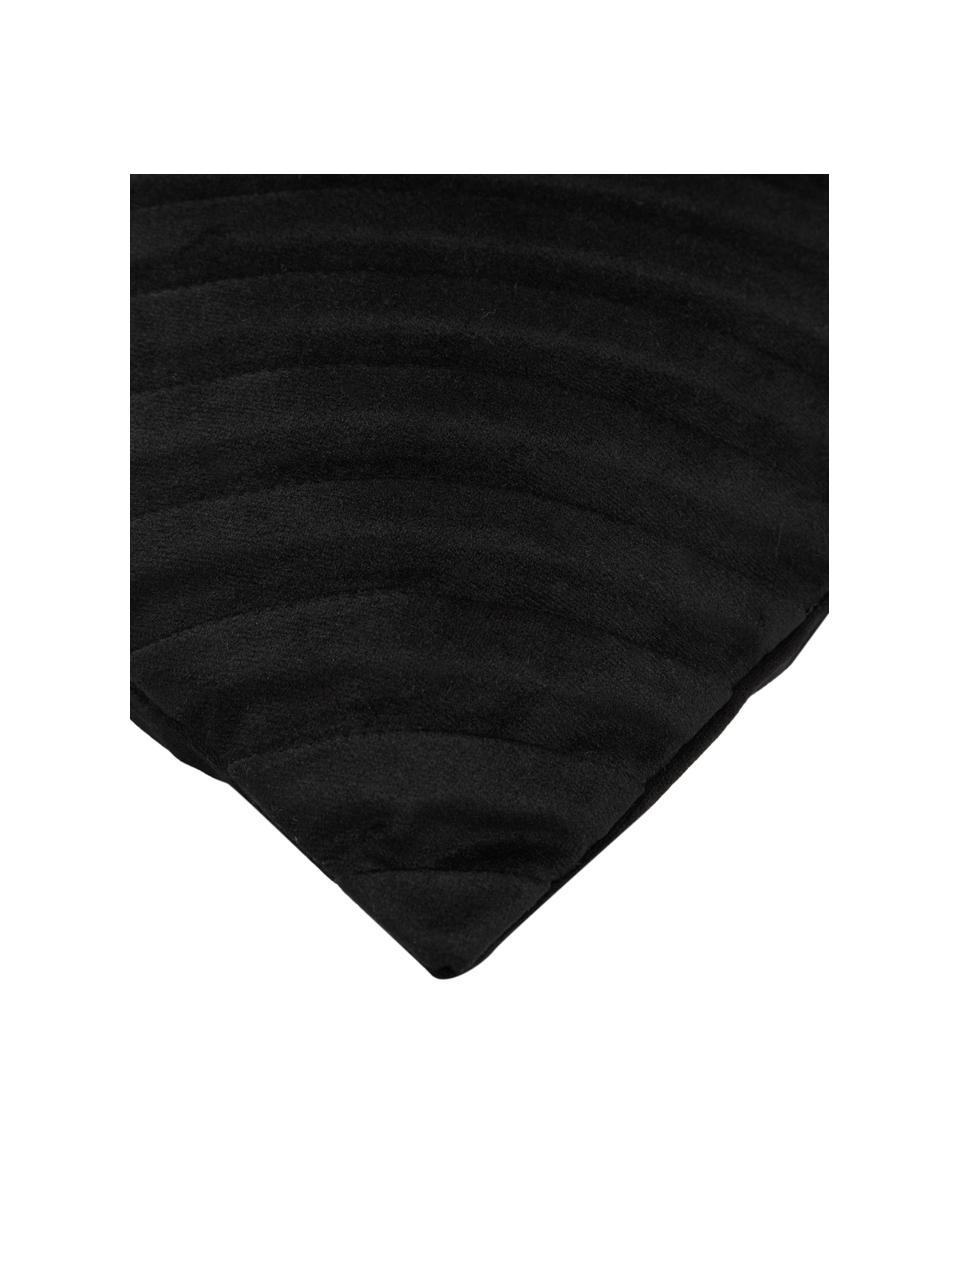 Housse de coussin en velours noir Lucie, 100 % velours de polyester, Noir, larg. 30 x long. 50 cm